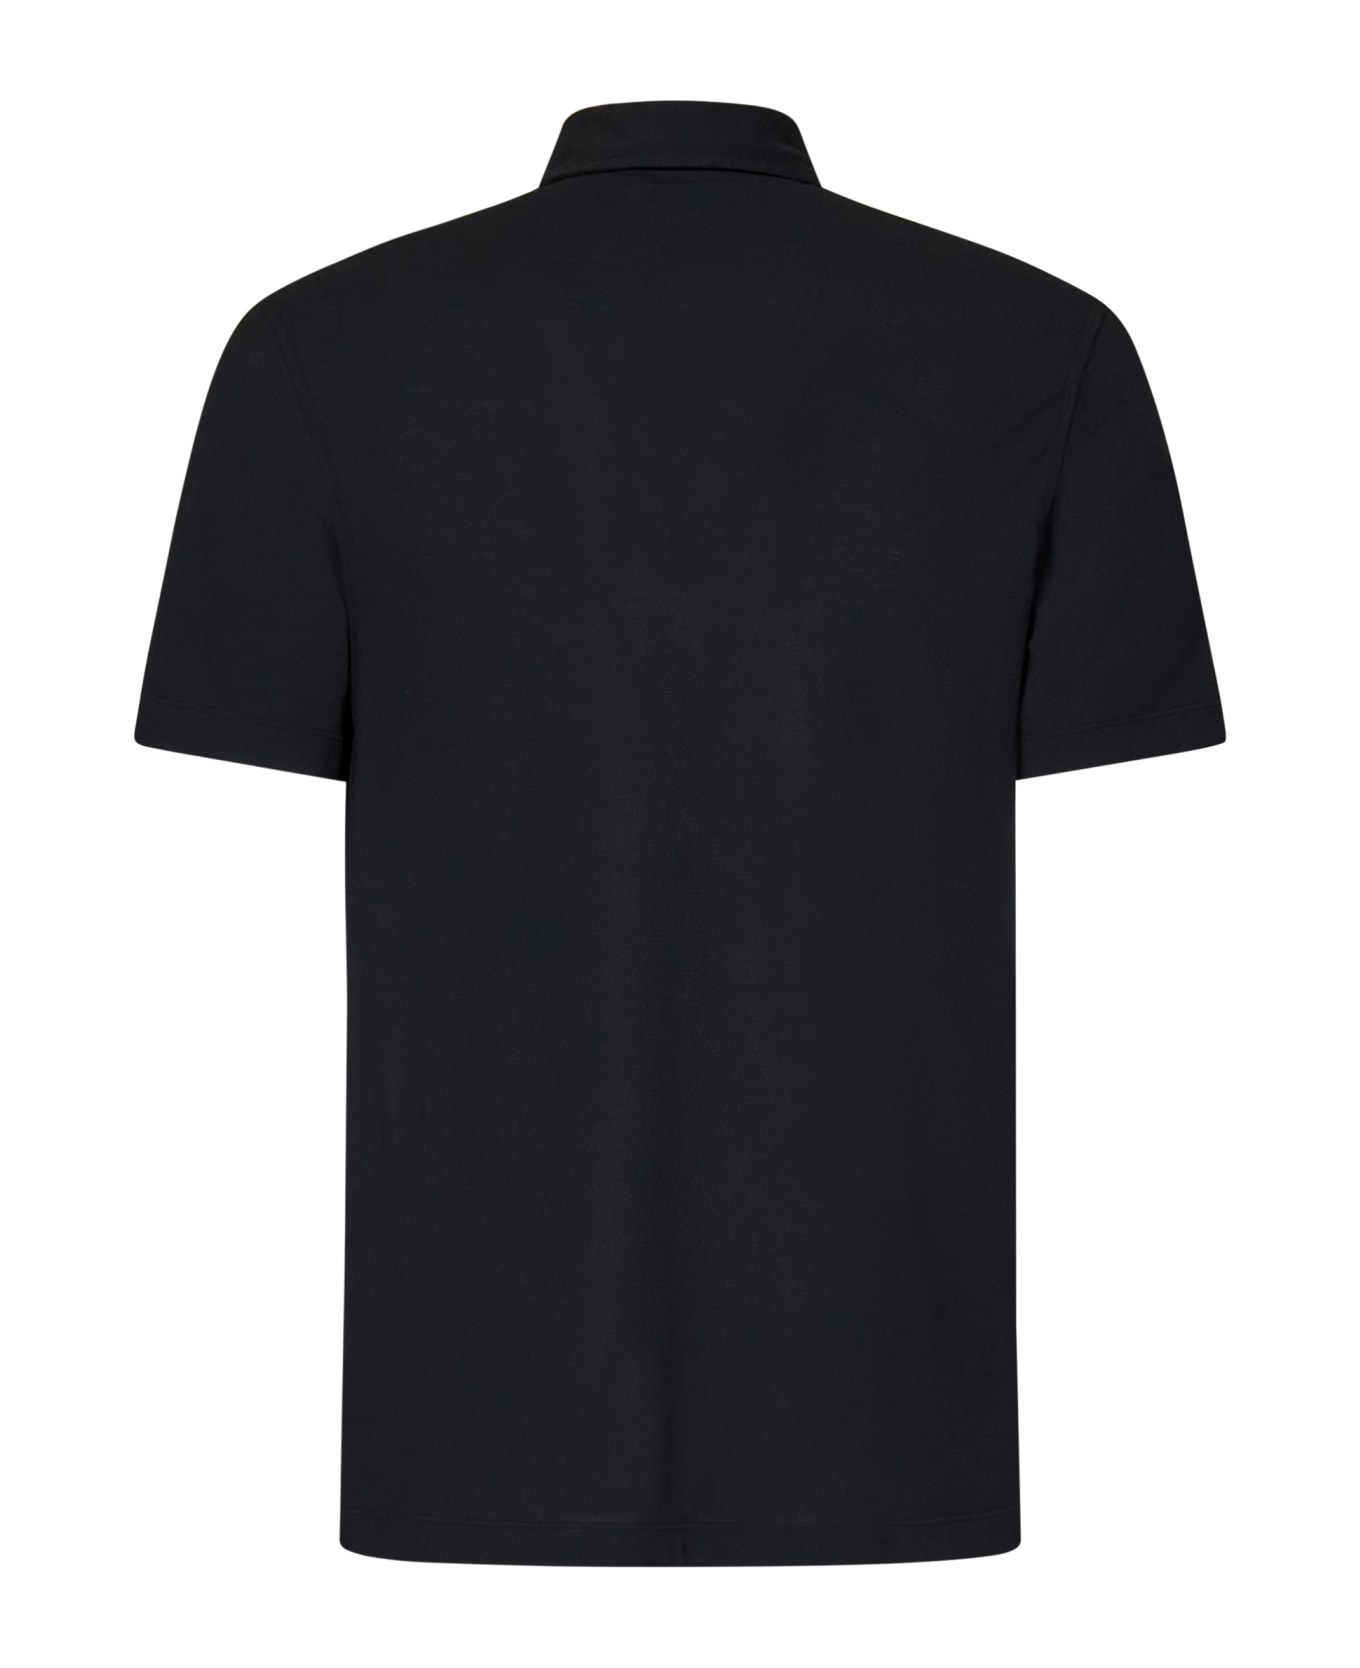 Drumohr Polo Shirt - Black ポロシャツ